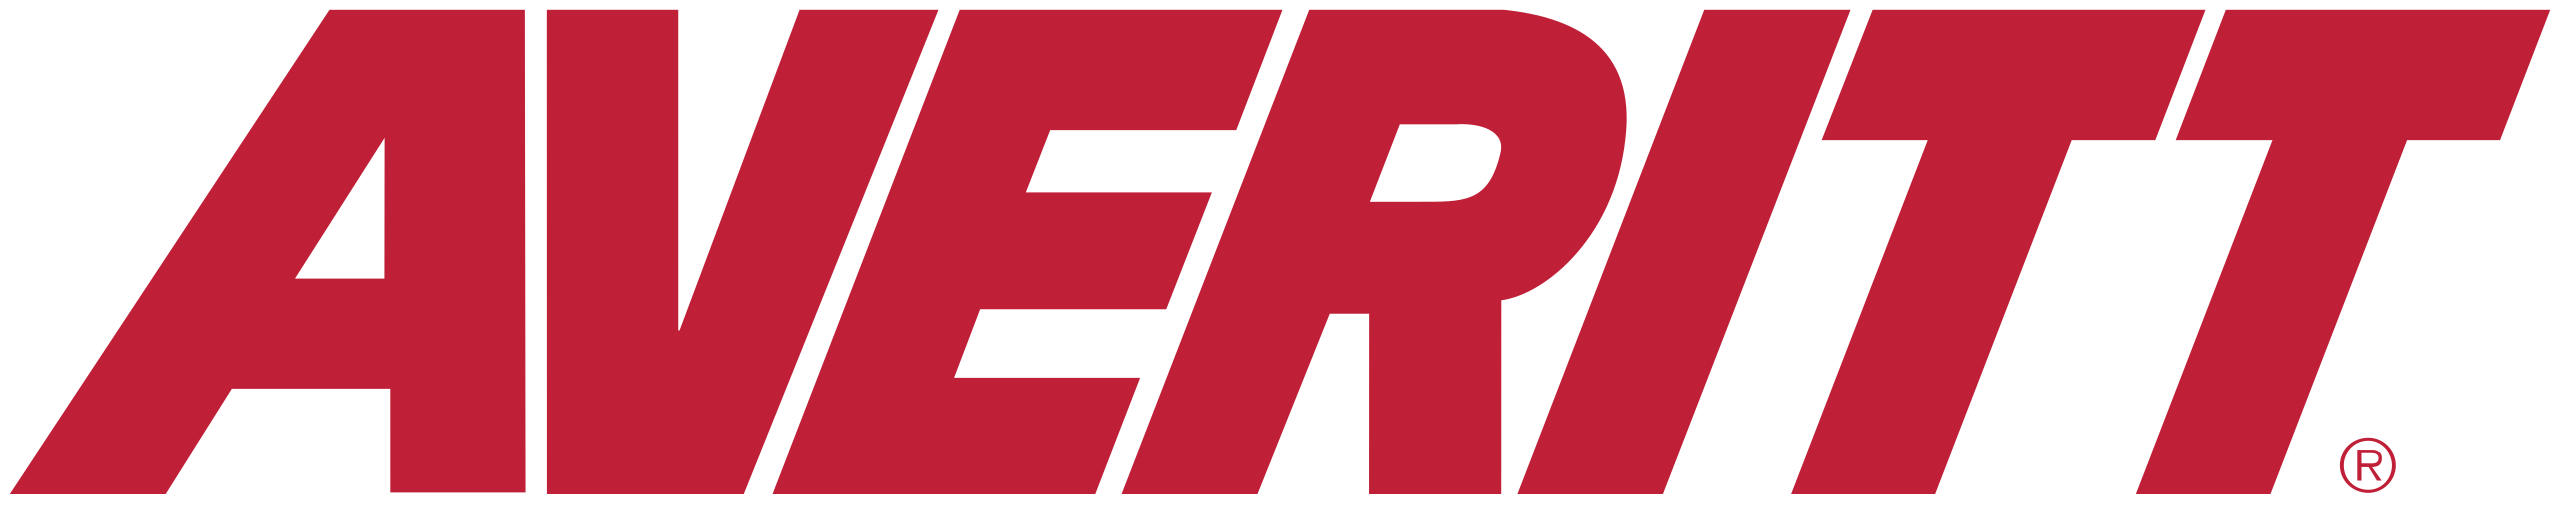 Averitt-Express-Logo